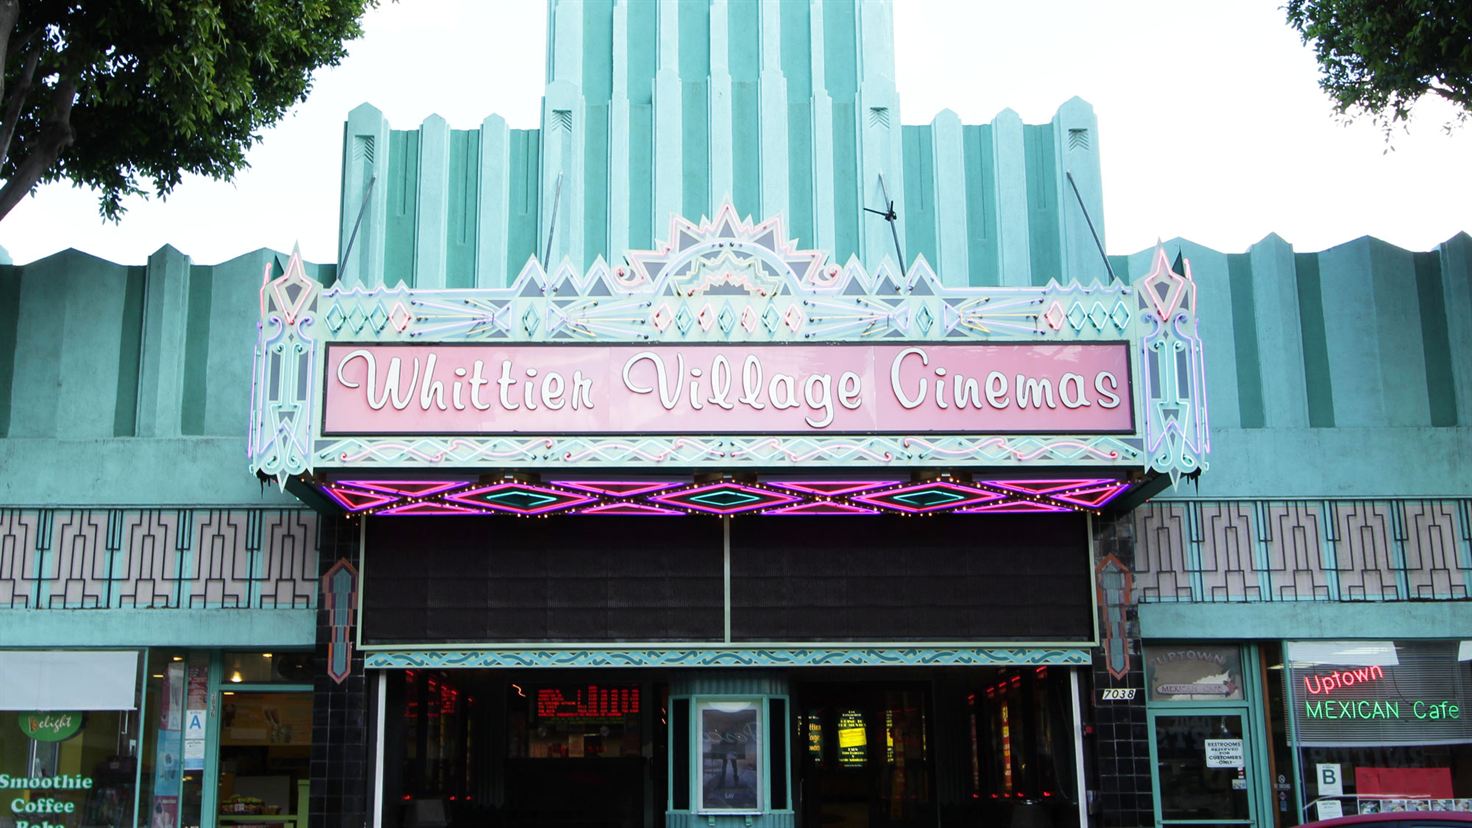 Whittier Village Cinemas